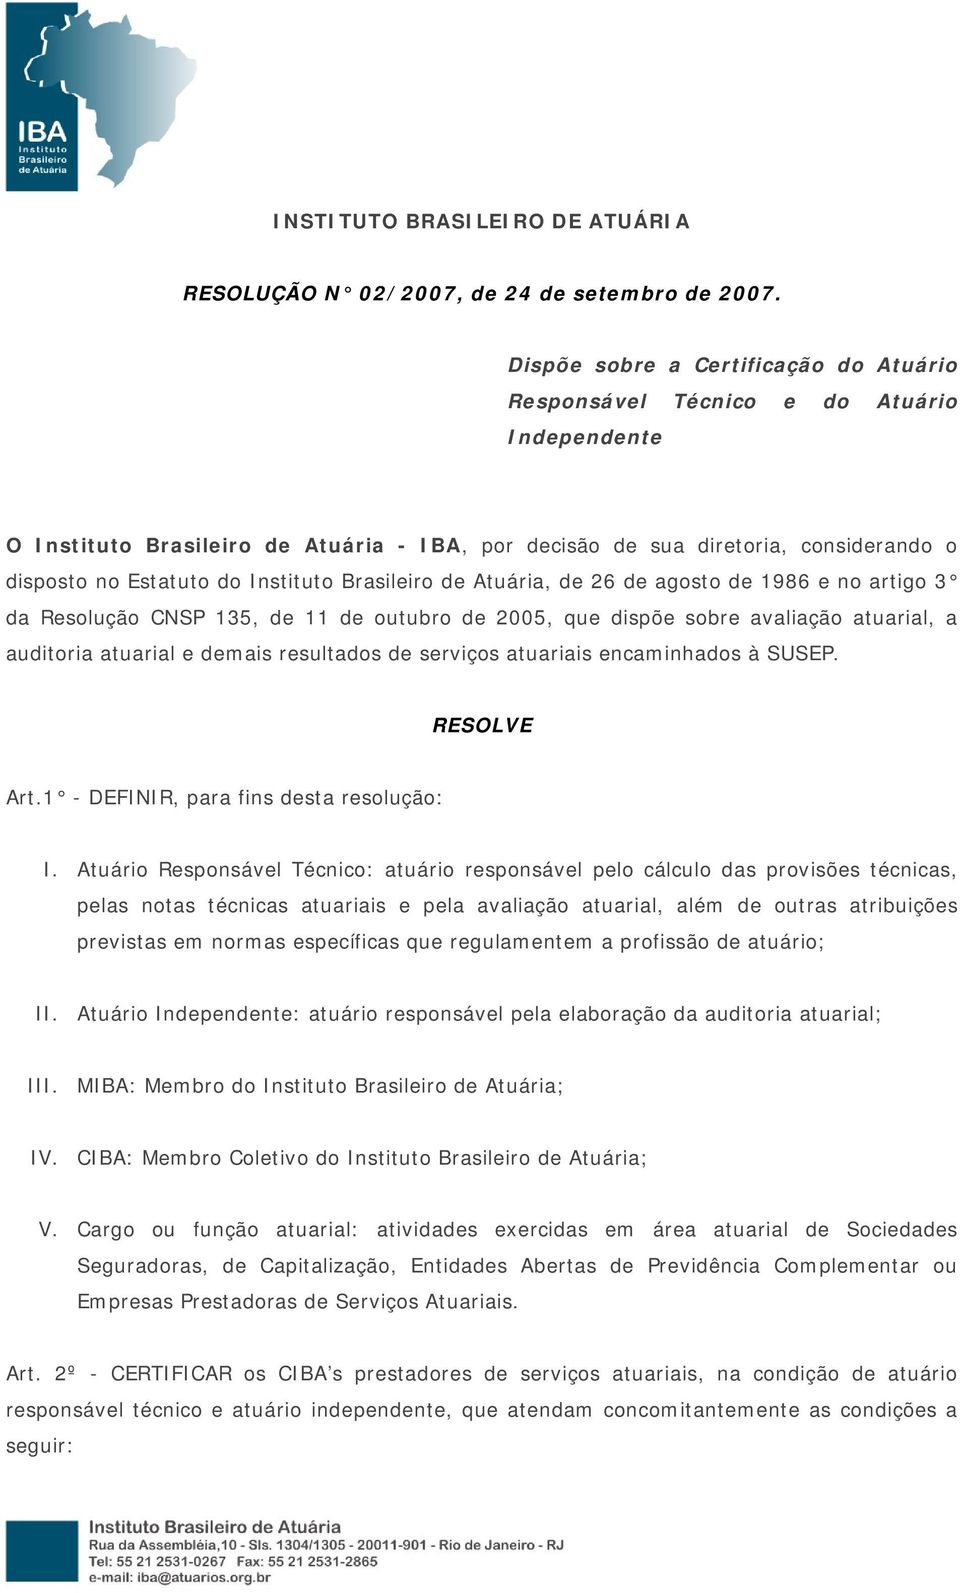 Instituto Brasileiro de Atuária, de 26 de agosto de 1986 e no artigo 3 da Resolução CNSP 135, de 11 de outubro de 2005, que dispõe sobre avaliação atuarial, a auditoria atuarial e demais resultados